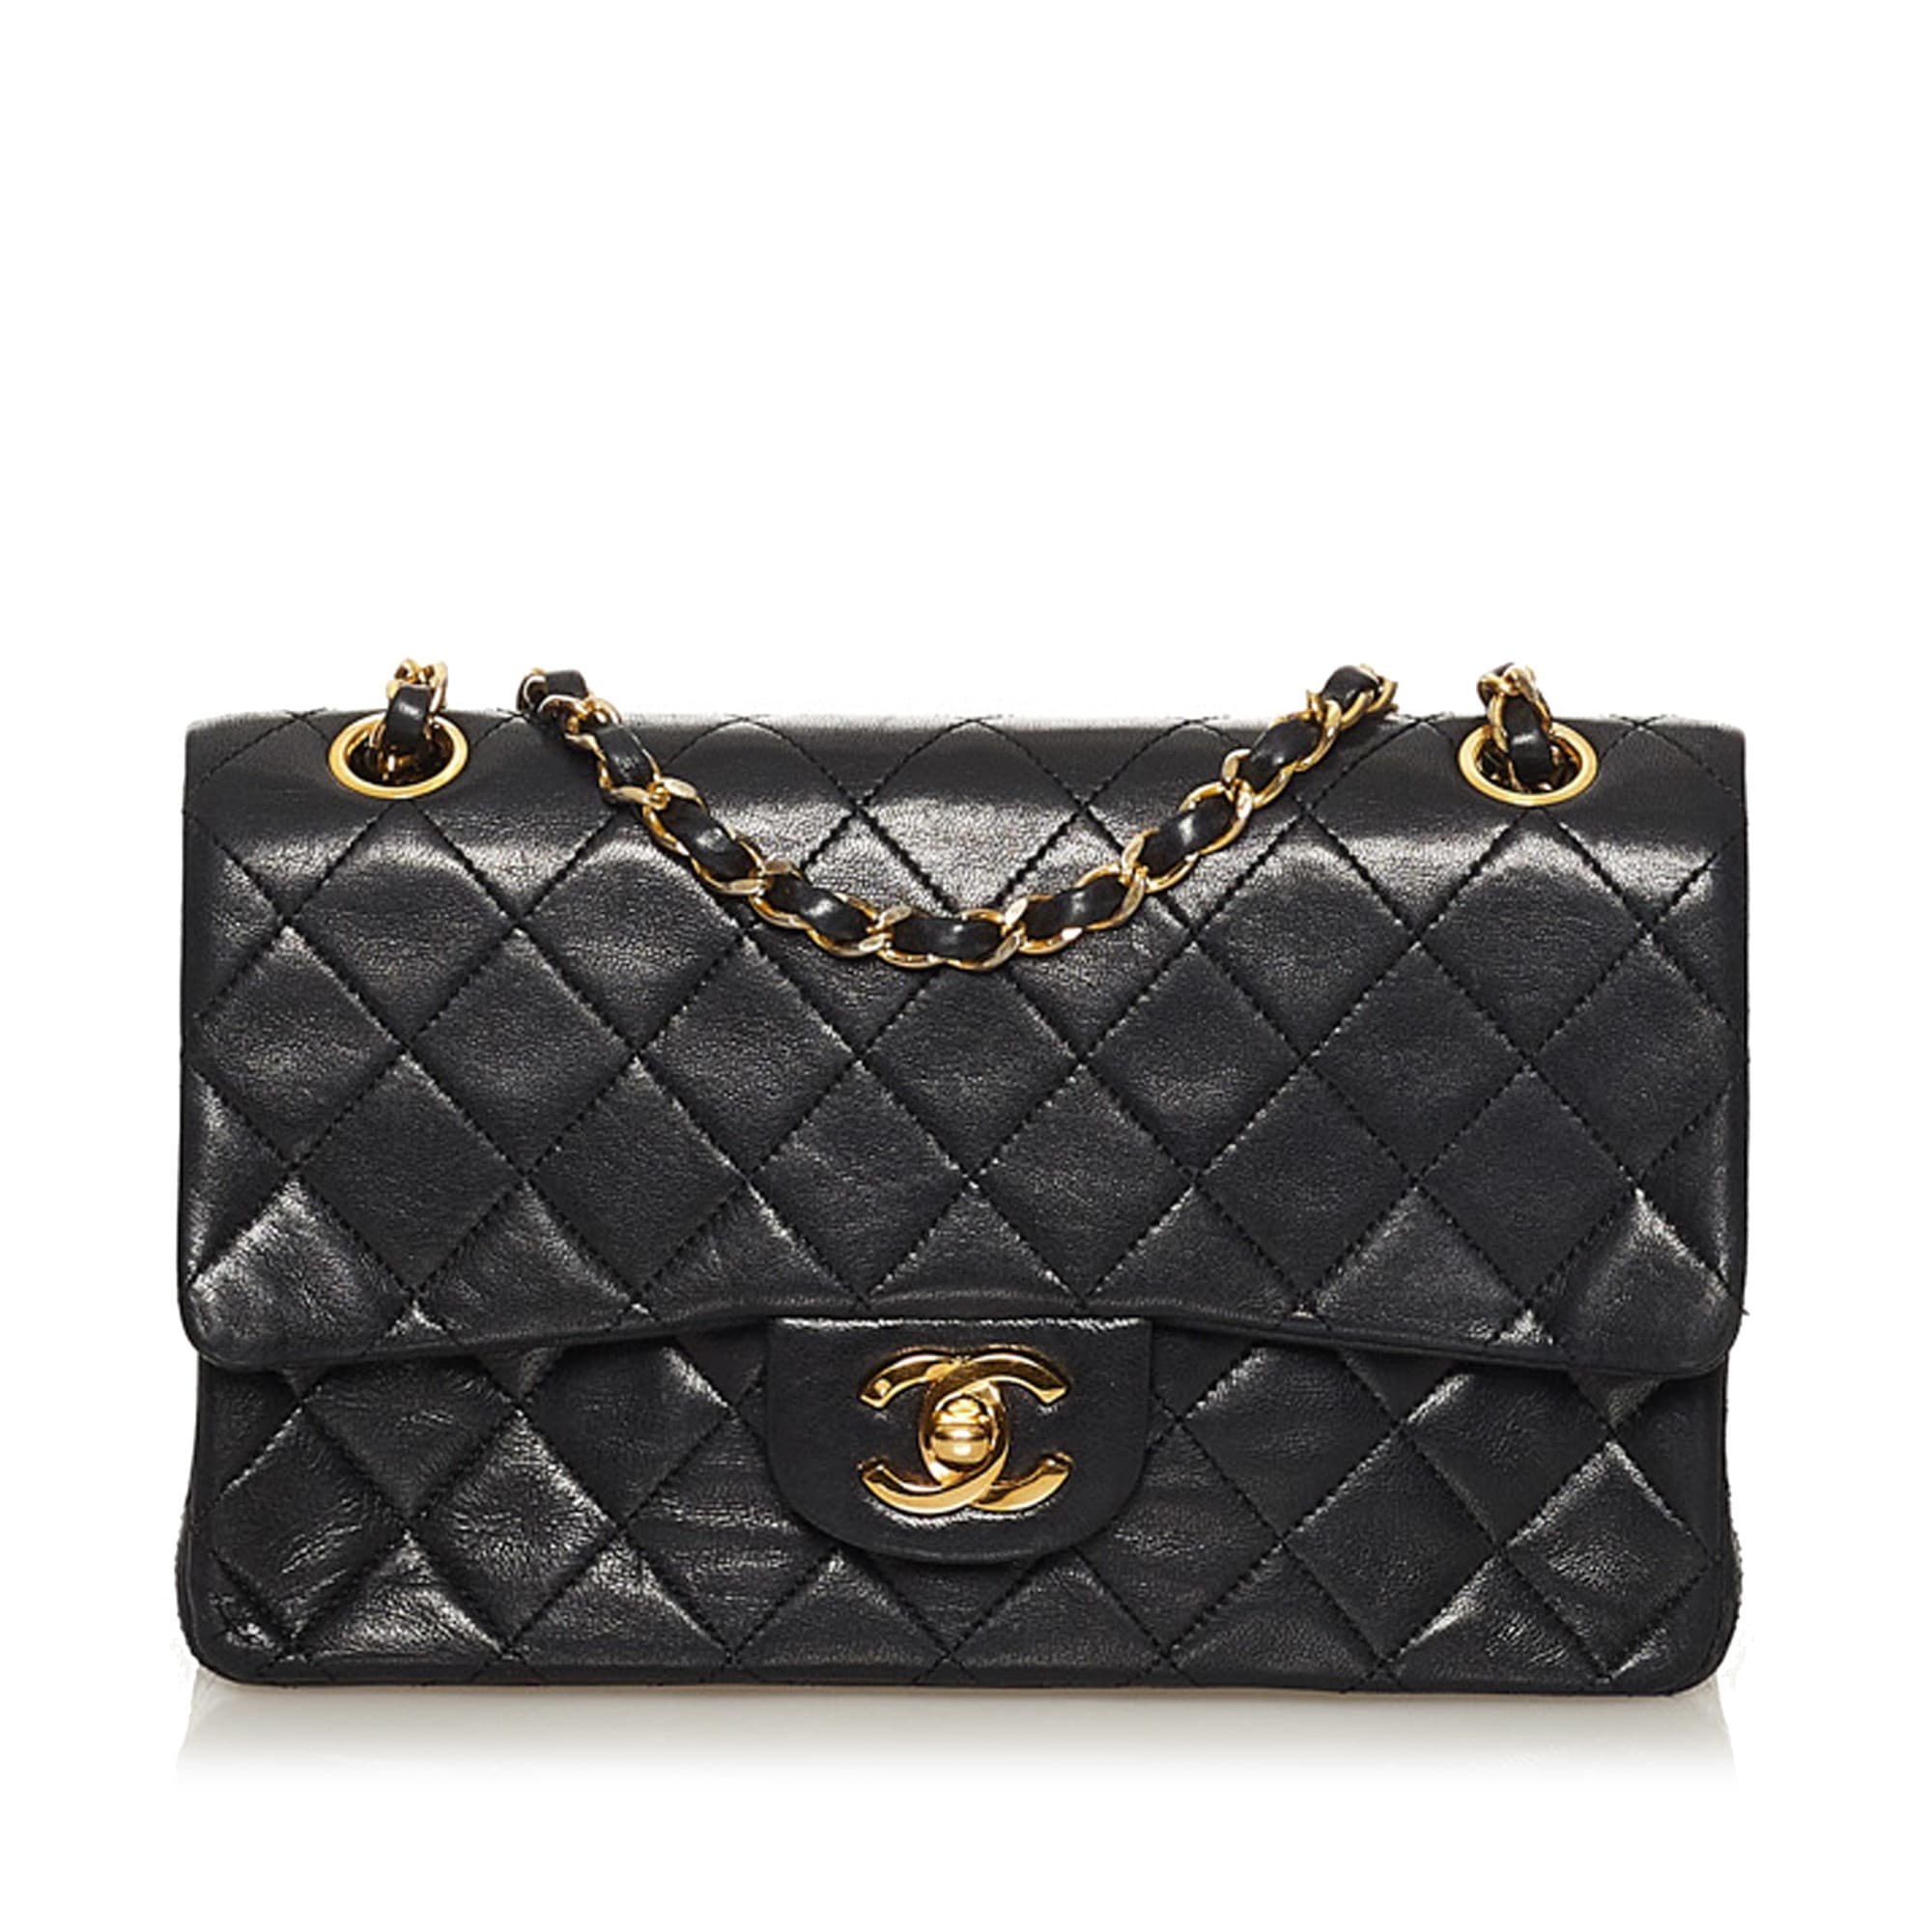 Chanel Small Cc Matelasse Lambskin Flap Bag, ONESIZE